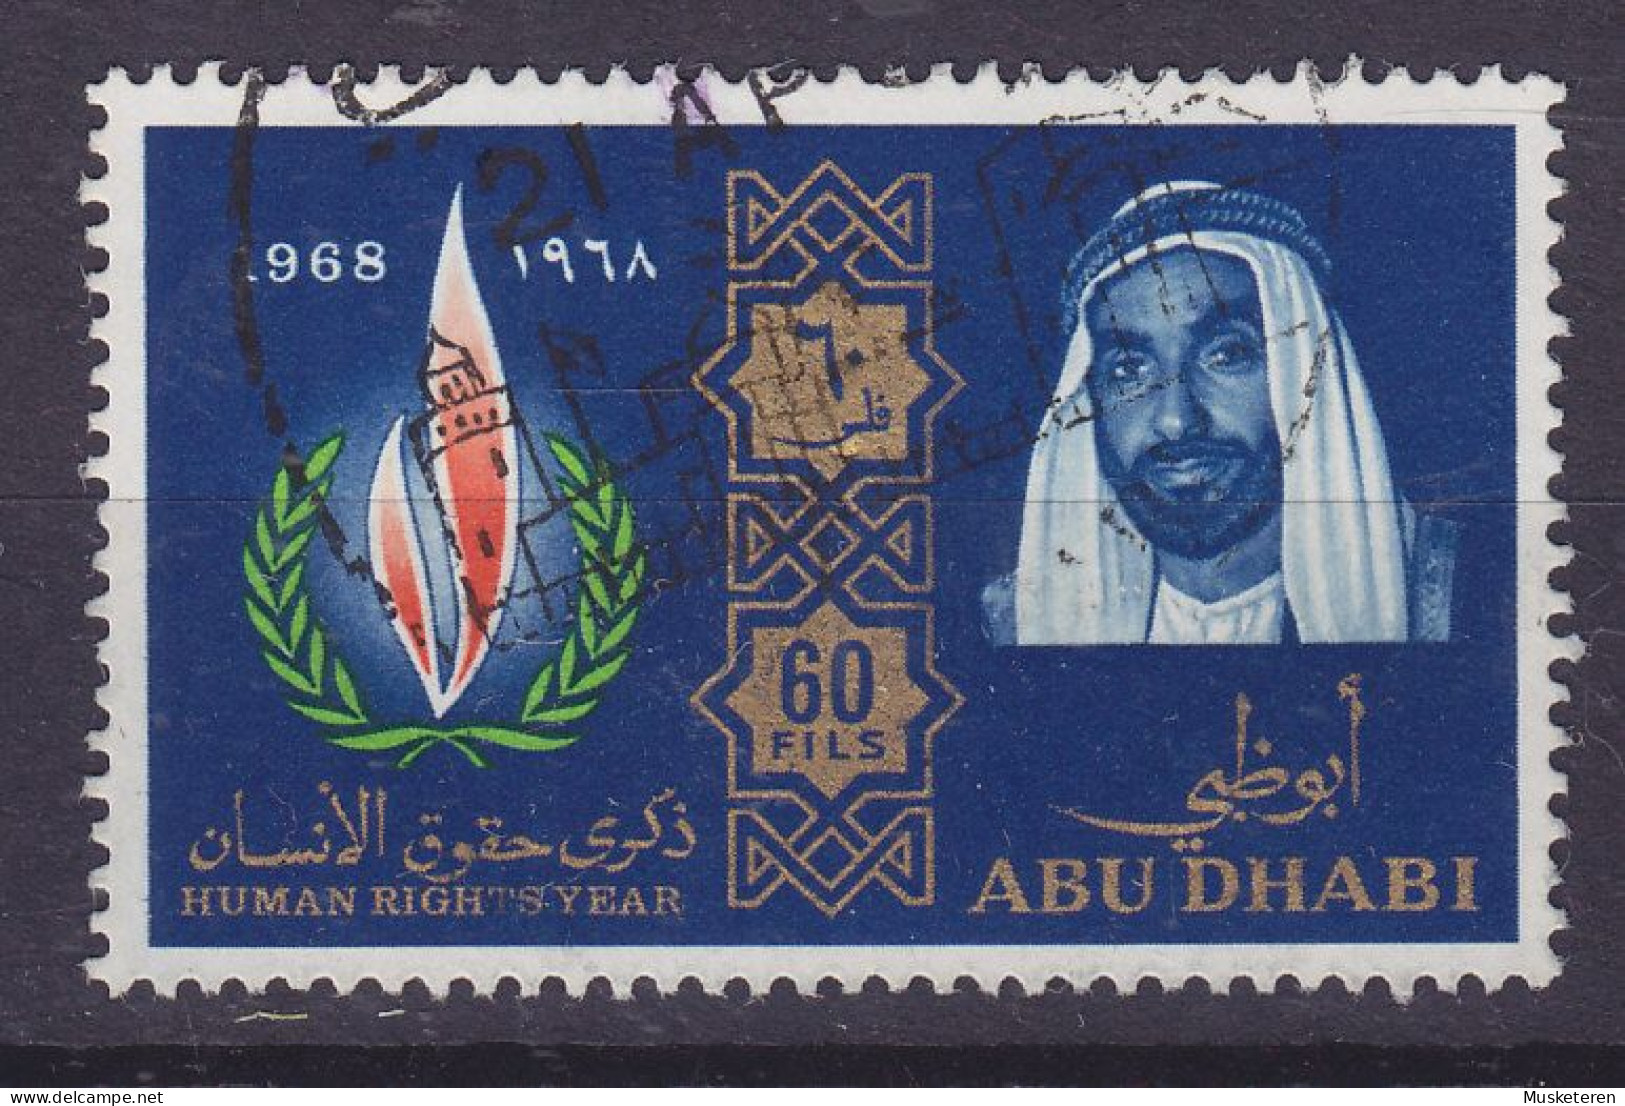 Abu Dhabi 1968 Mi. 44, Erklärung Der Menschenrechte UNO-Emblem - Abu Dhabi